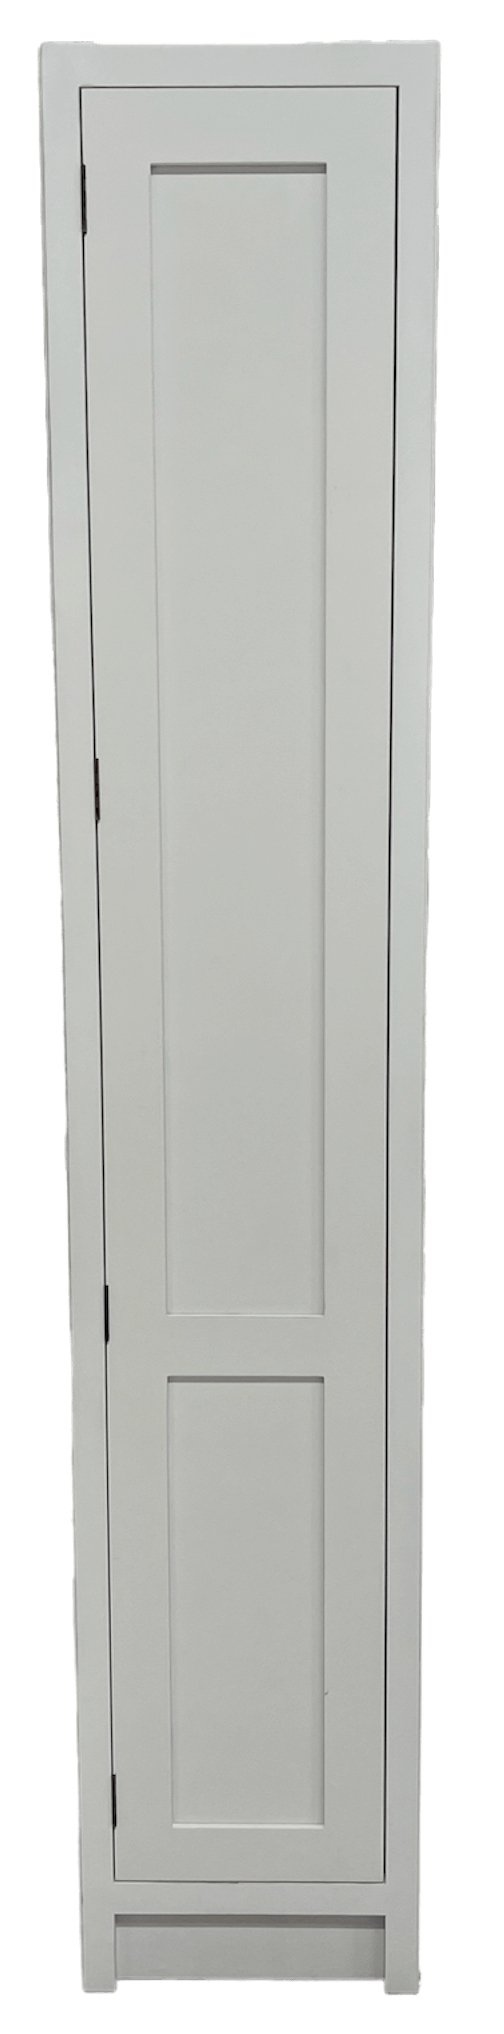 TL 400 - 400mm Wide Tall single door larder Unit - Classic Kitchens Direct